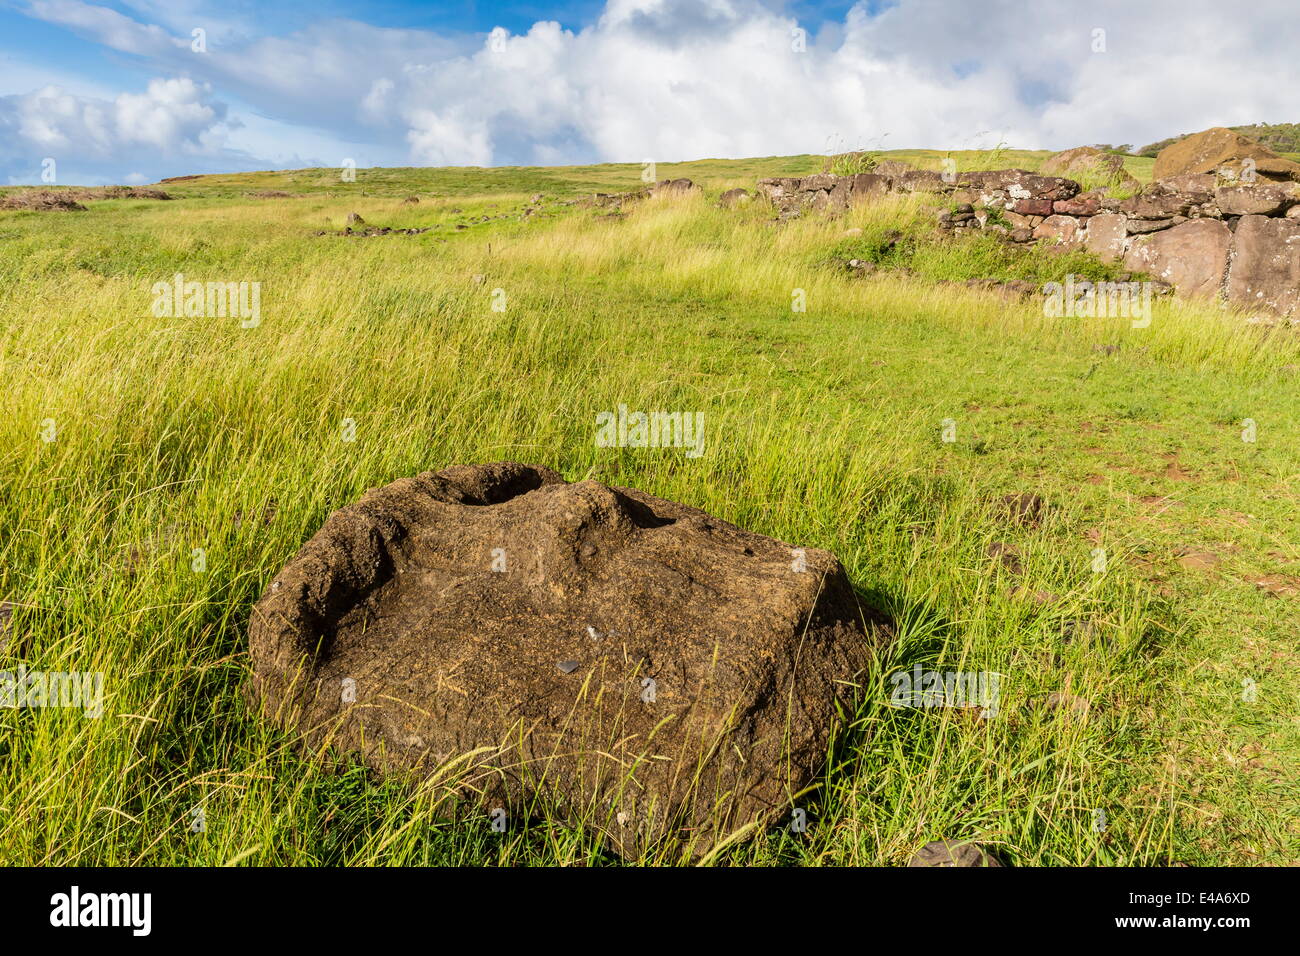 Cabeza de moai caídos en el sitio arqueológico de Ahu Vinapu, Parque Nacional Rapa Nui, la UNESCO, la Isla de Pascua (Isla de Pascua), Chile Foto de stock